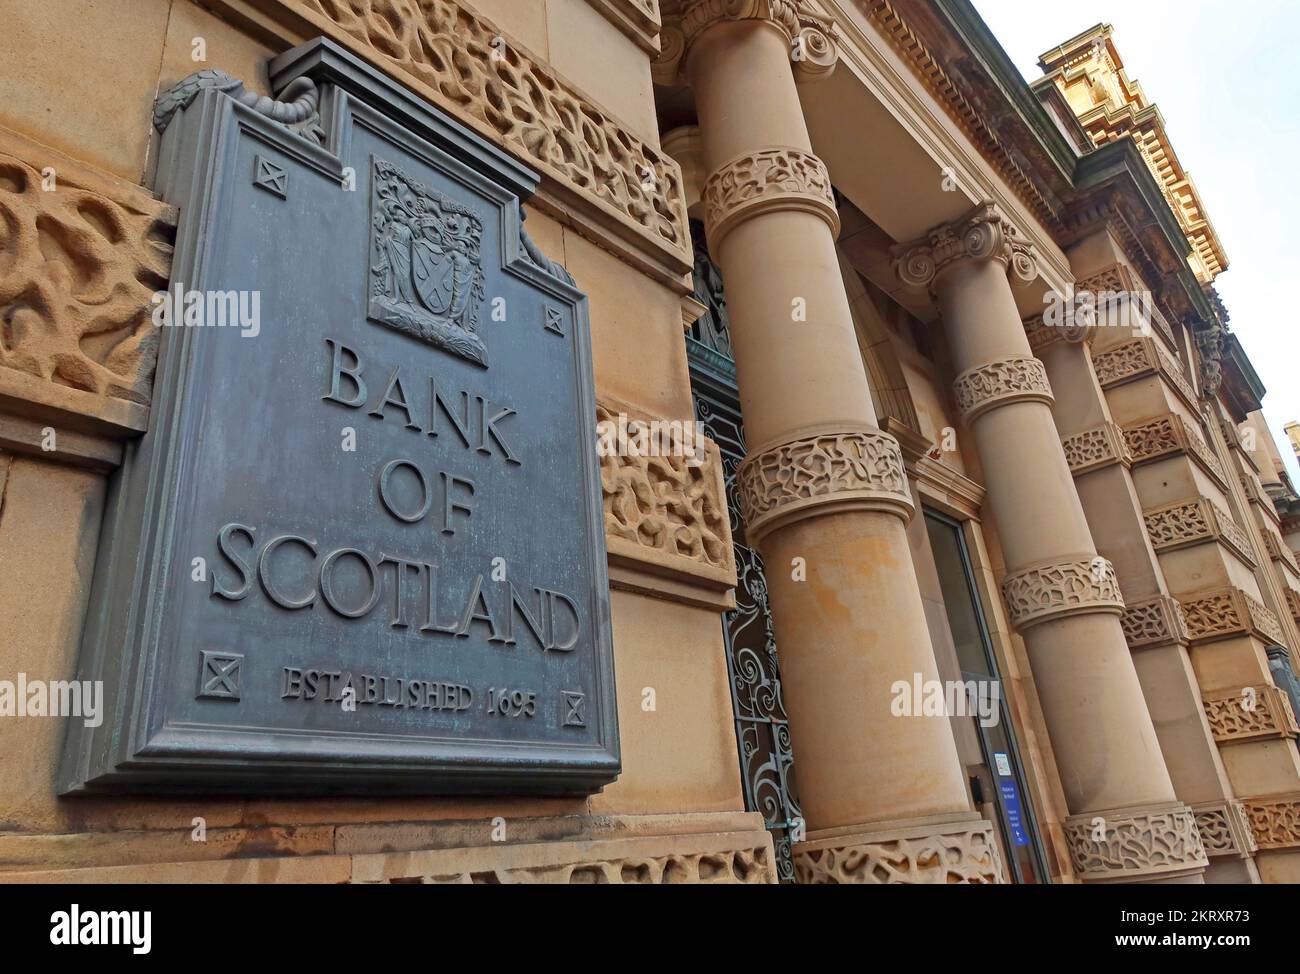 Bank of Scotland, Banca na h-Alba, siège social 1695, au centre-ville de Mound Edinburgh, Écosse, Royaume-Uni, EH1 1YZ Banque D'Images